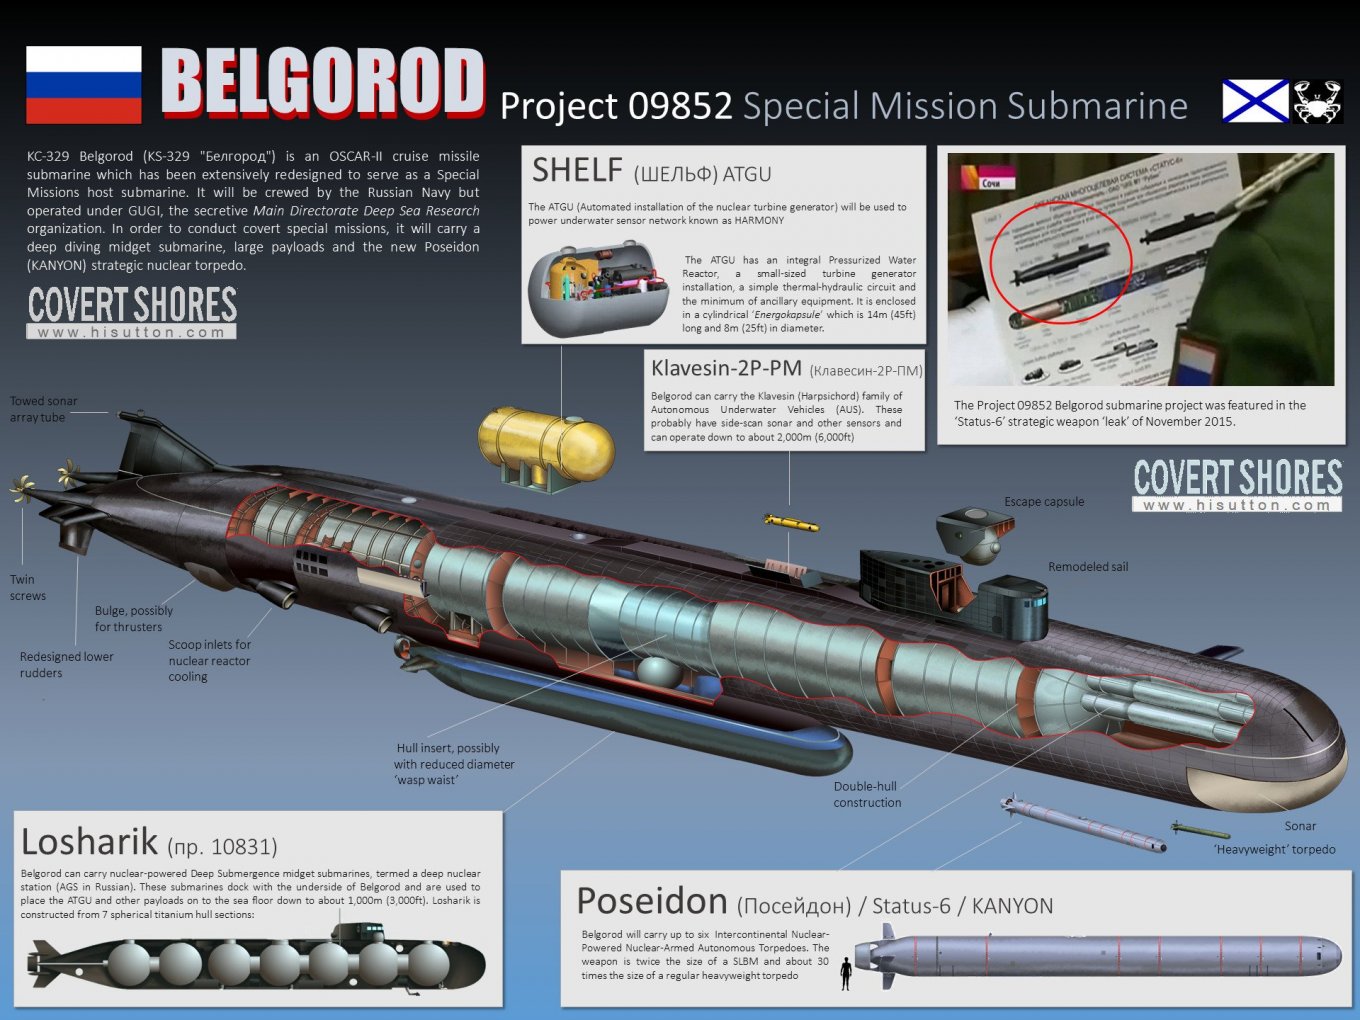 Схематичне зображення субмарини &quot;Белгород&quot;, що може виступати носієм зокрема атомних торпедах &quot;Посейдон&quot;, ілюстративна інфографіка від H I Sutton